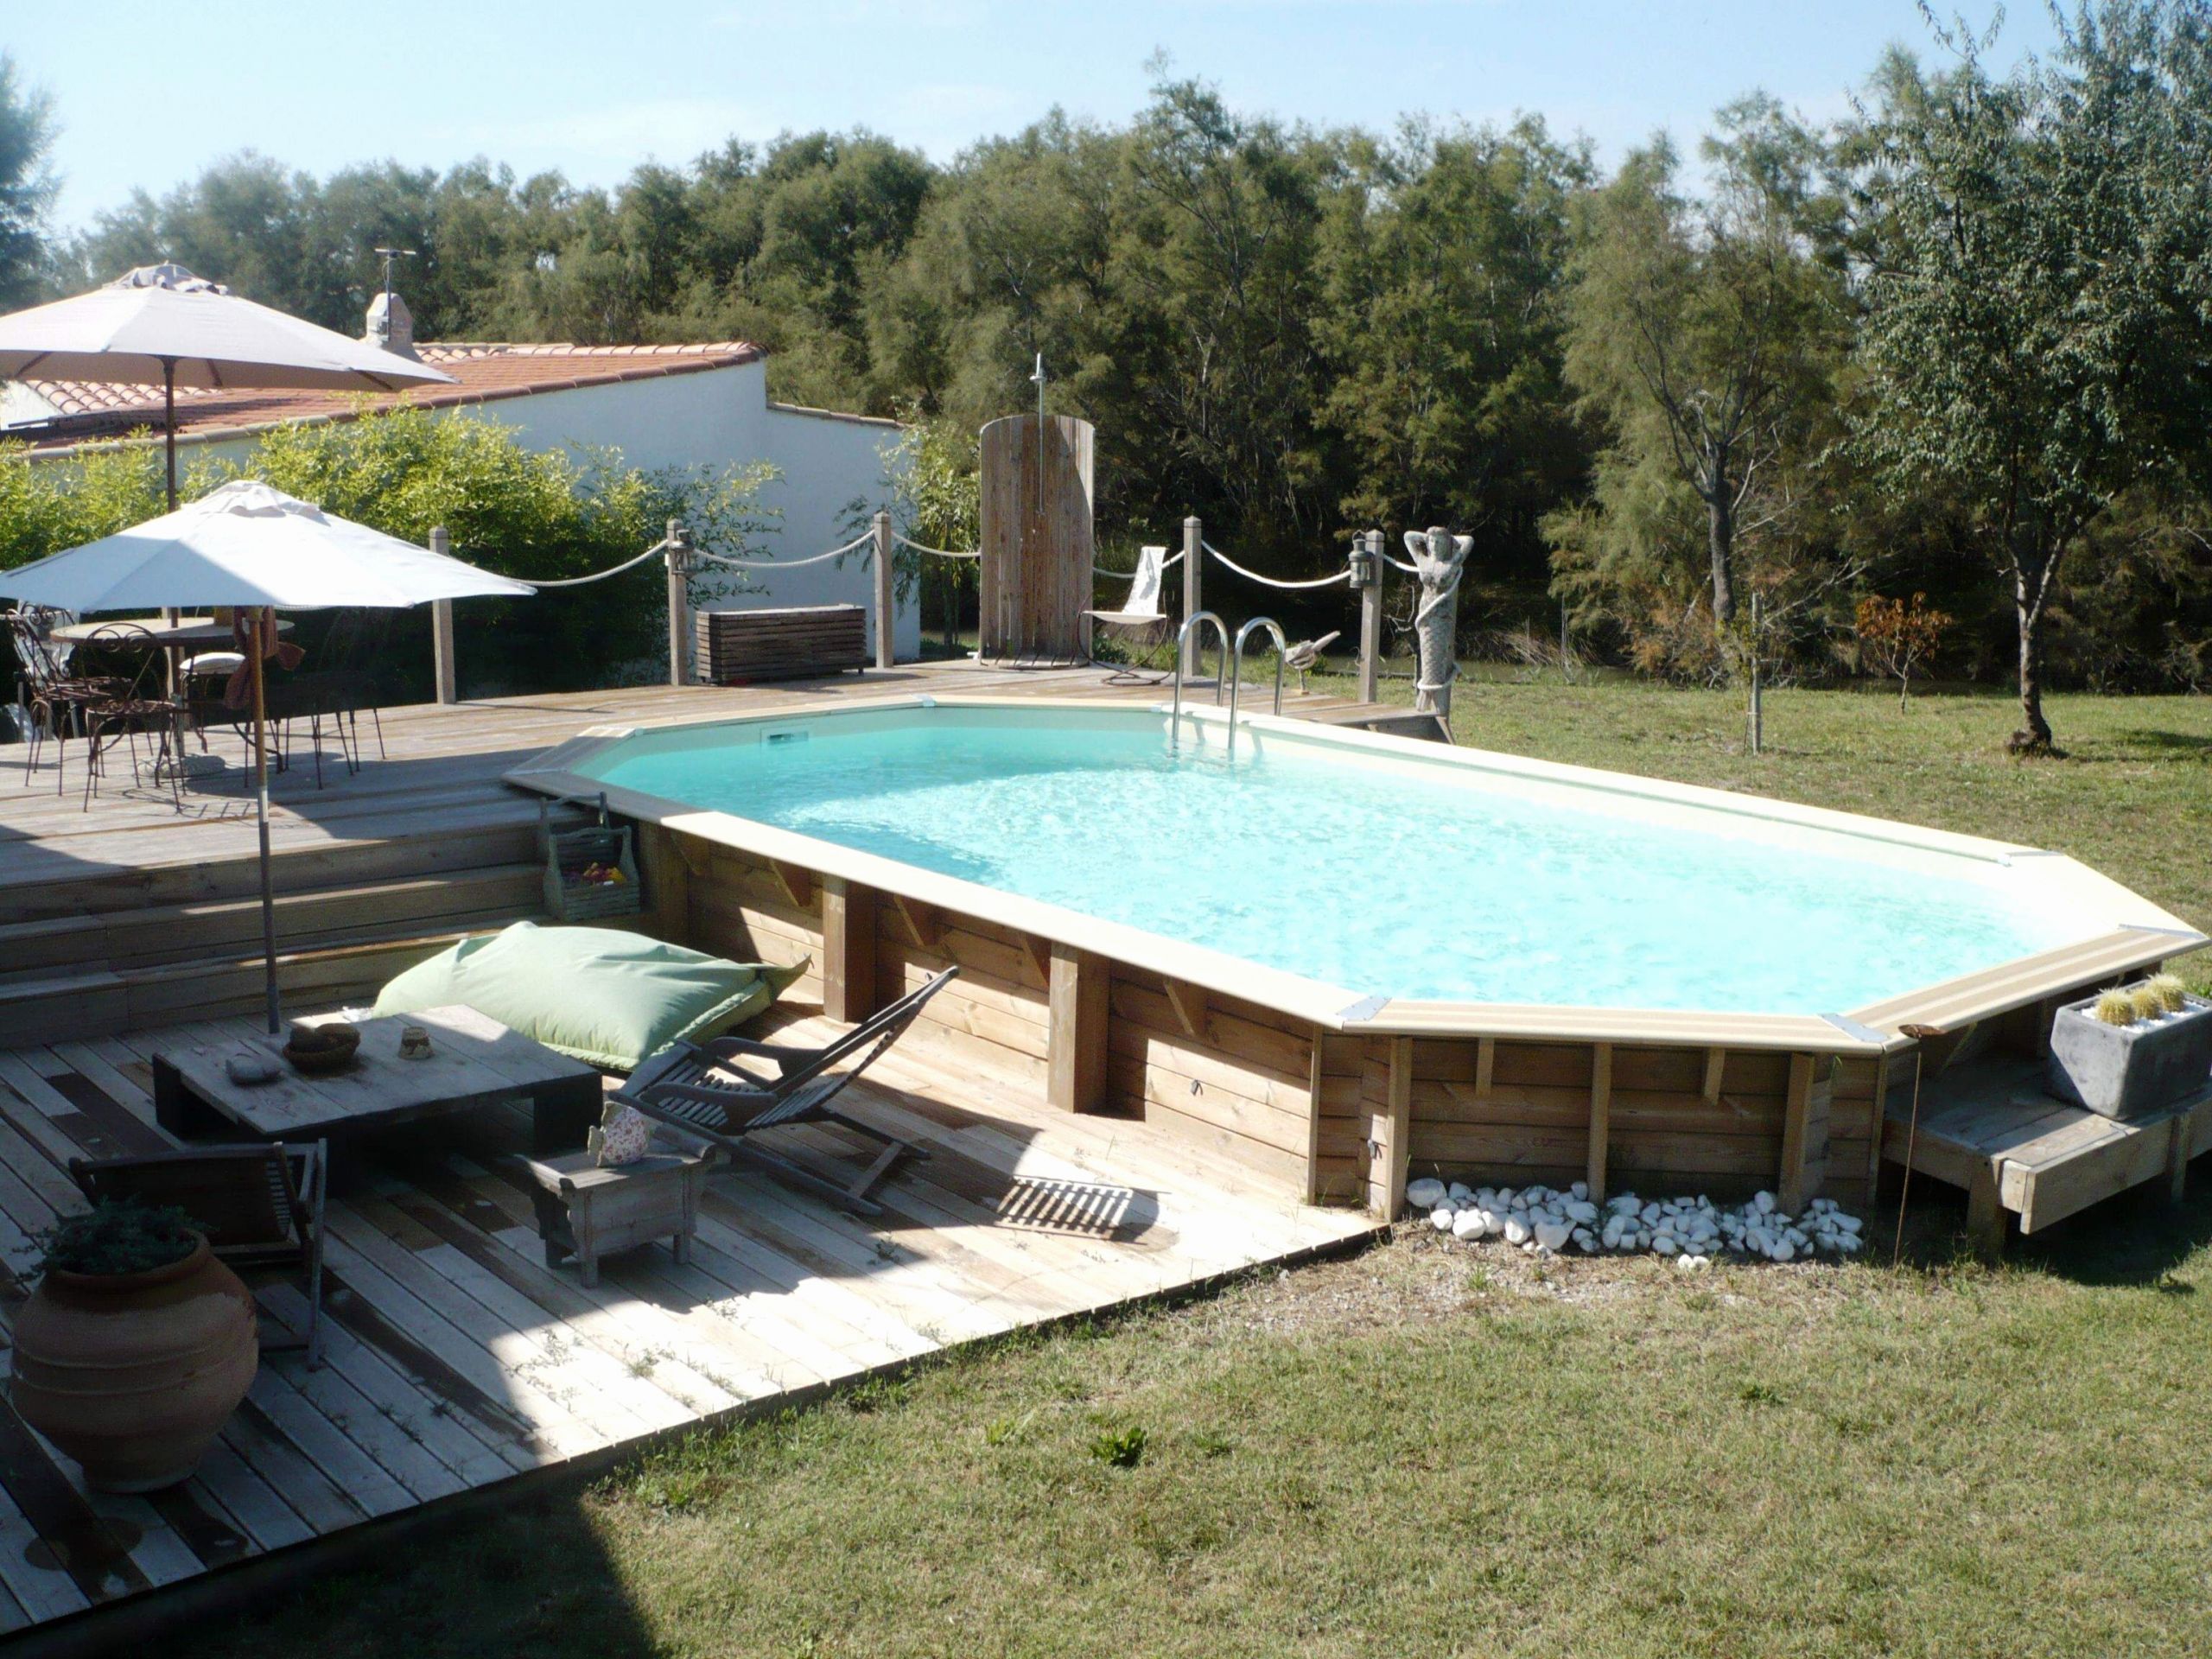 terrasse bois piscine hors sol unique piscine pierre elegant 51 piscine best amenagement piscine 0d of terrasse bois piscine hors sol